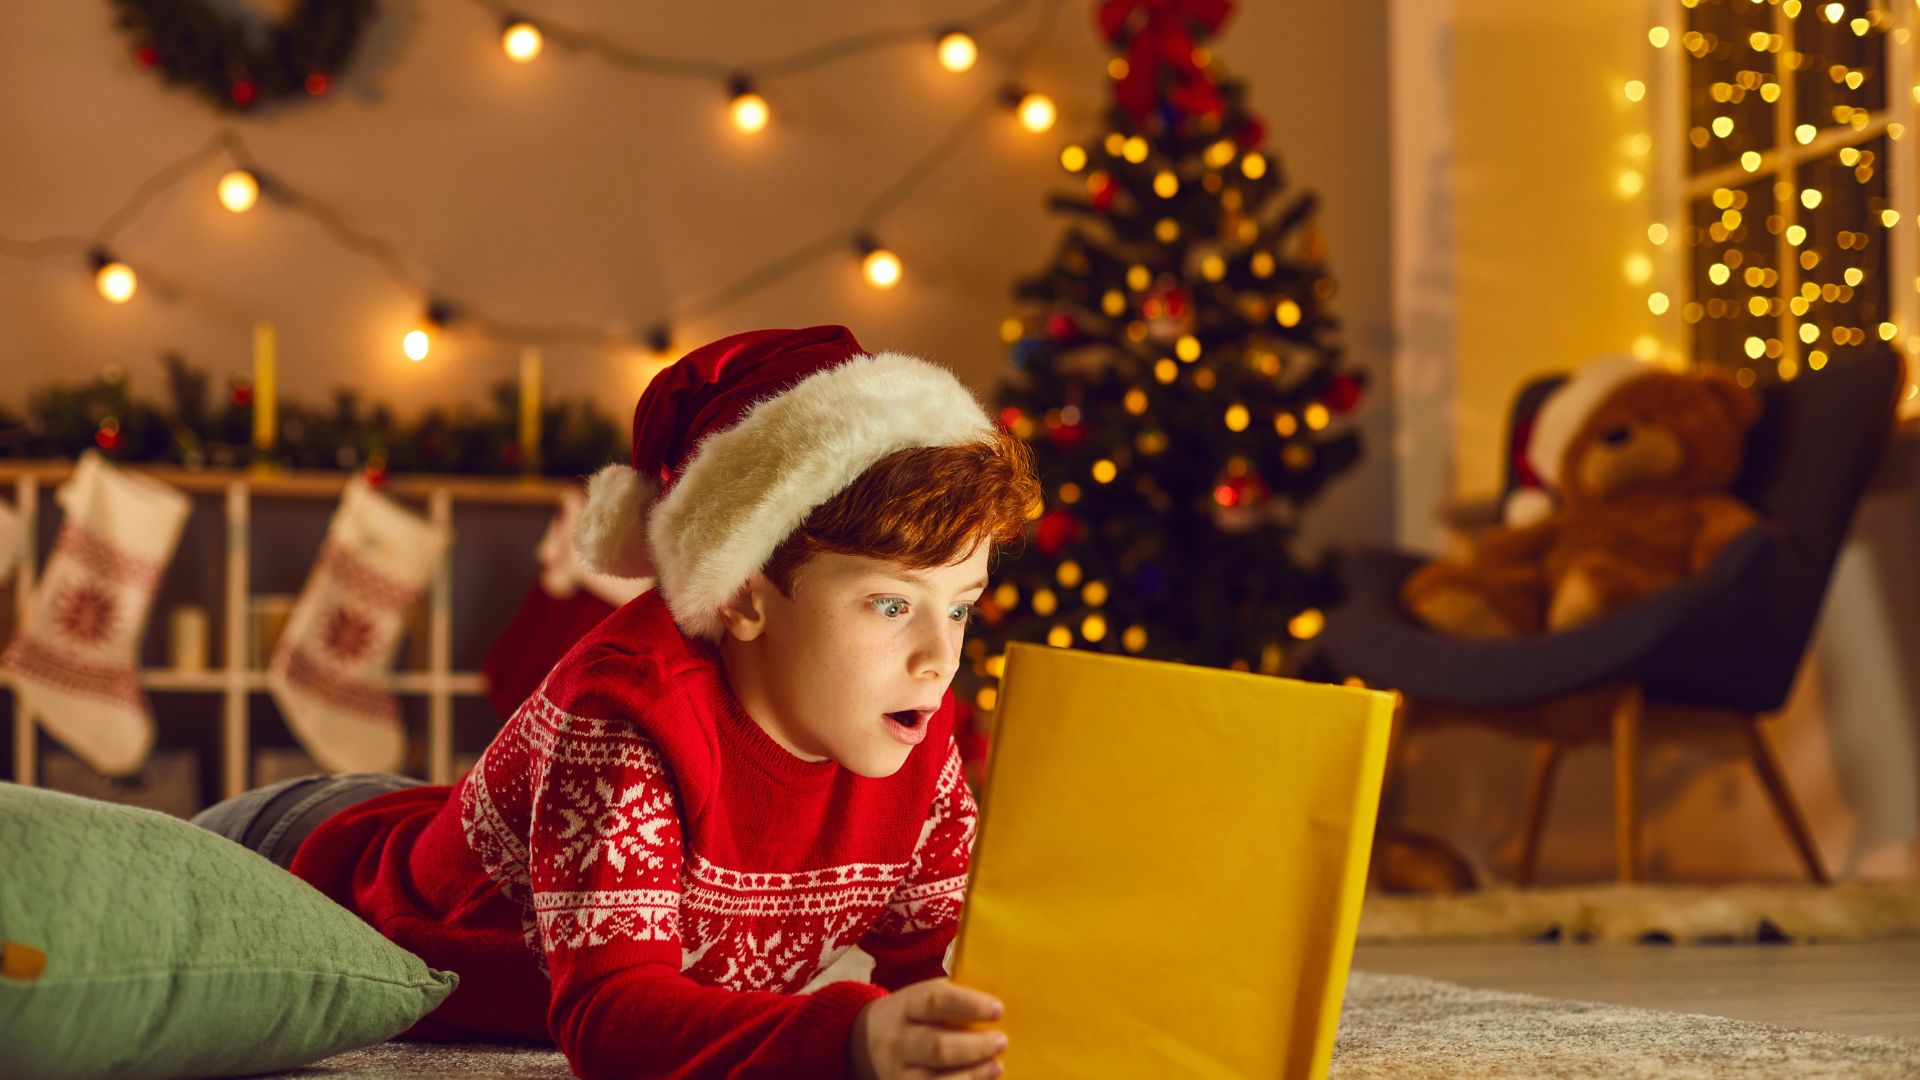 Imagem de uma sala decorada com enfeites natalinos. No chão, uma criança debruçada, lendo um livro de histórias. Ela está usando um suéter de lã e um chapéu de Natal na cor vermelho.